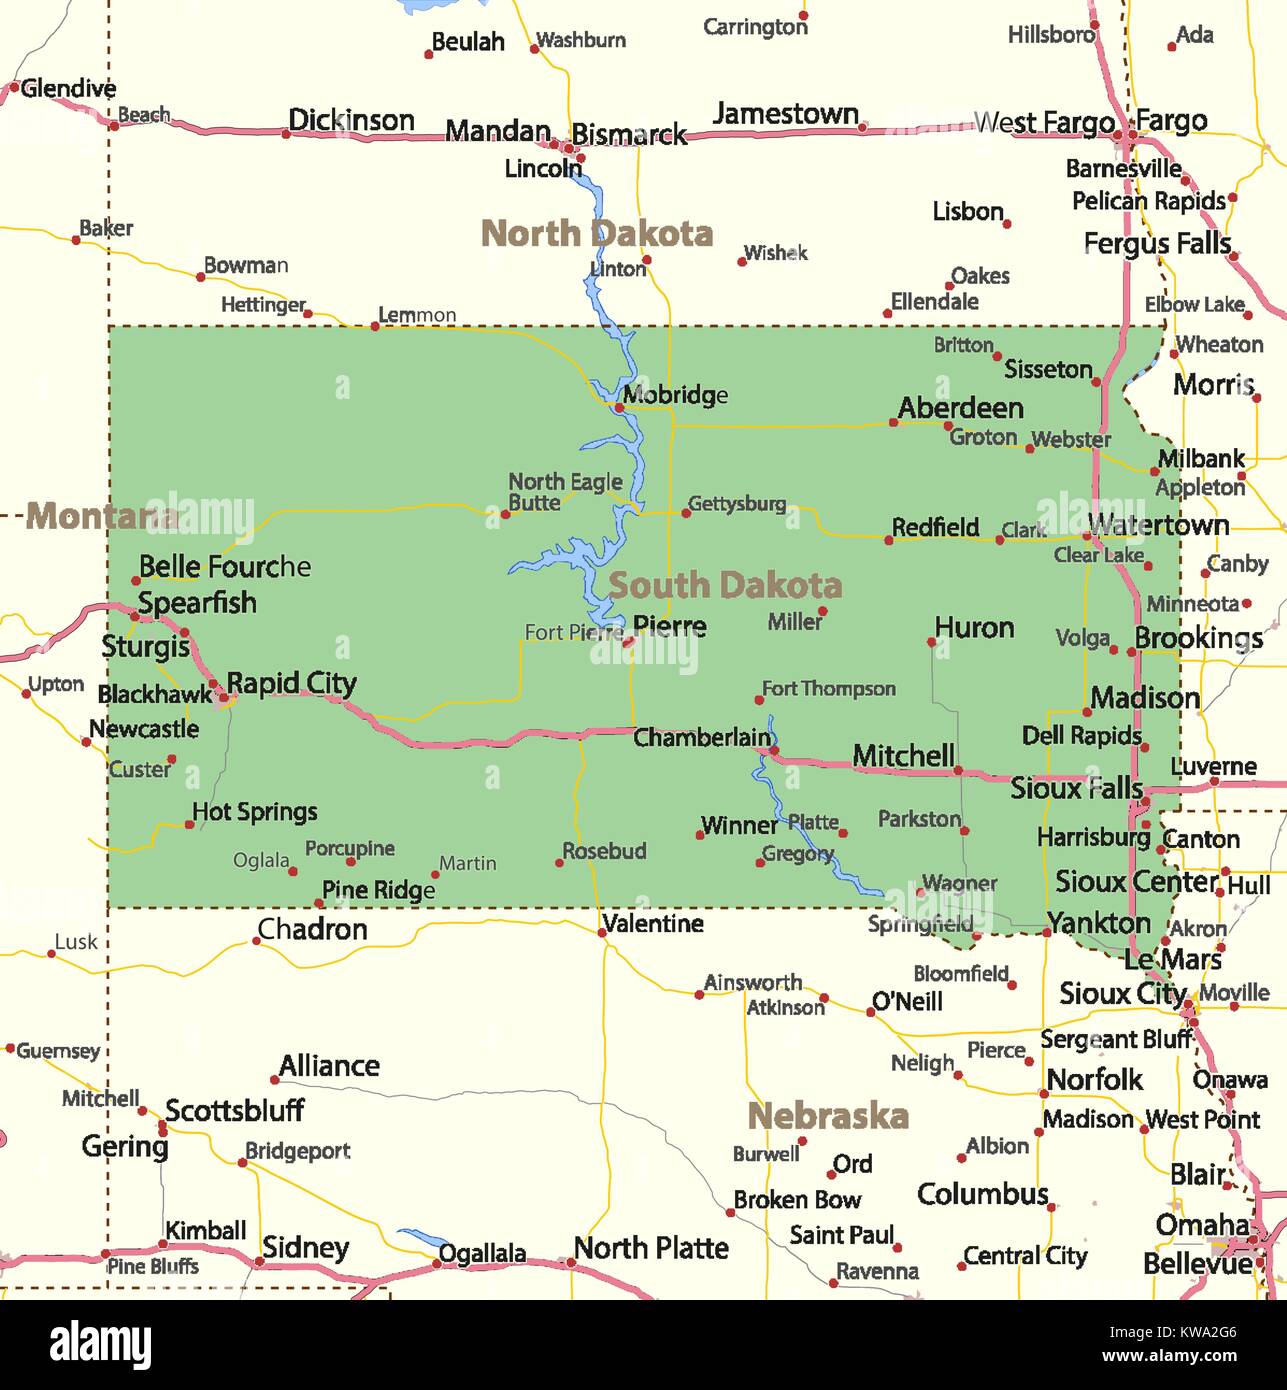 Mappa del Sud Dakota. Mostra i confini, zone urbane, nomi di località, strade e autostrade. Proiezione: proiezione di Mercatore. Illustrazione Vettoriale